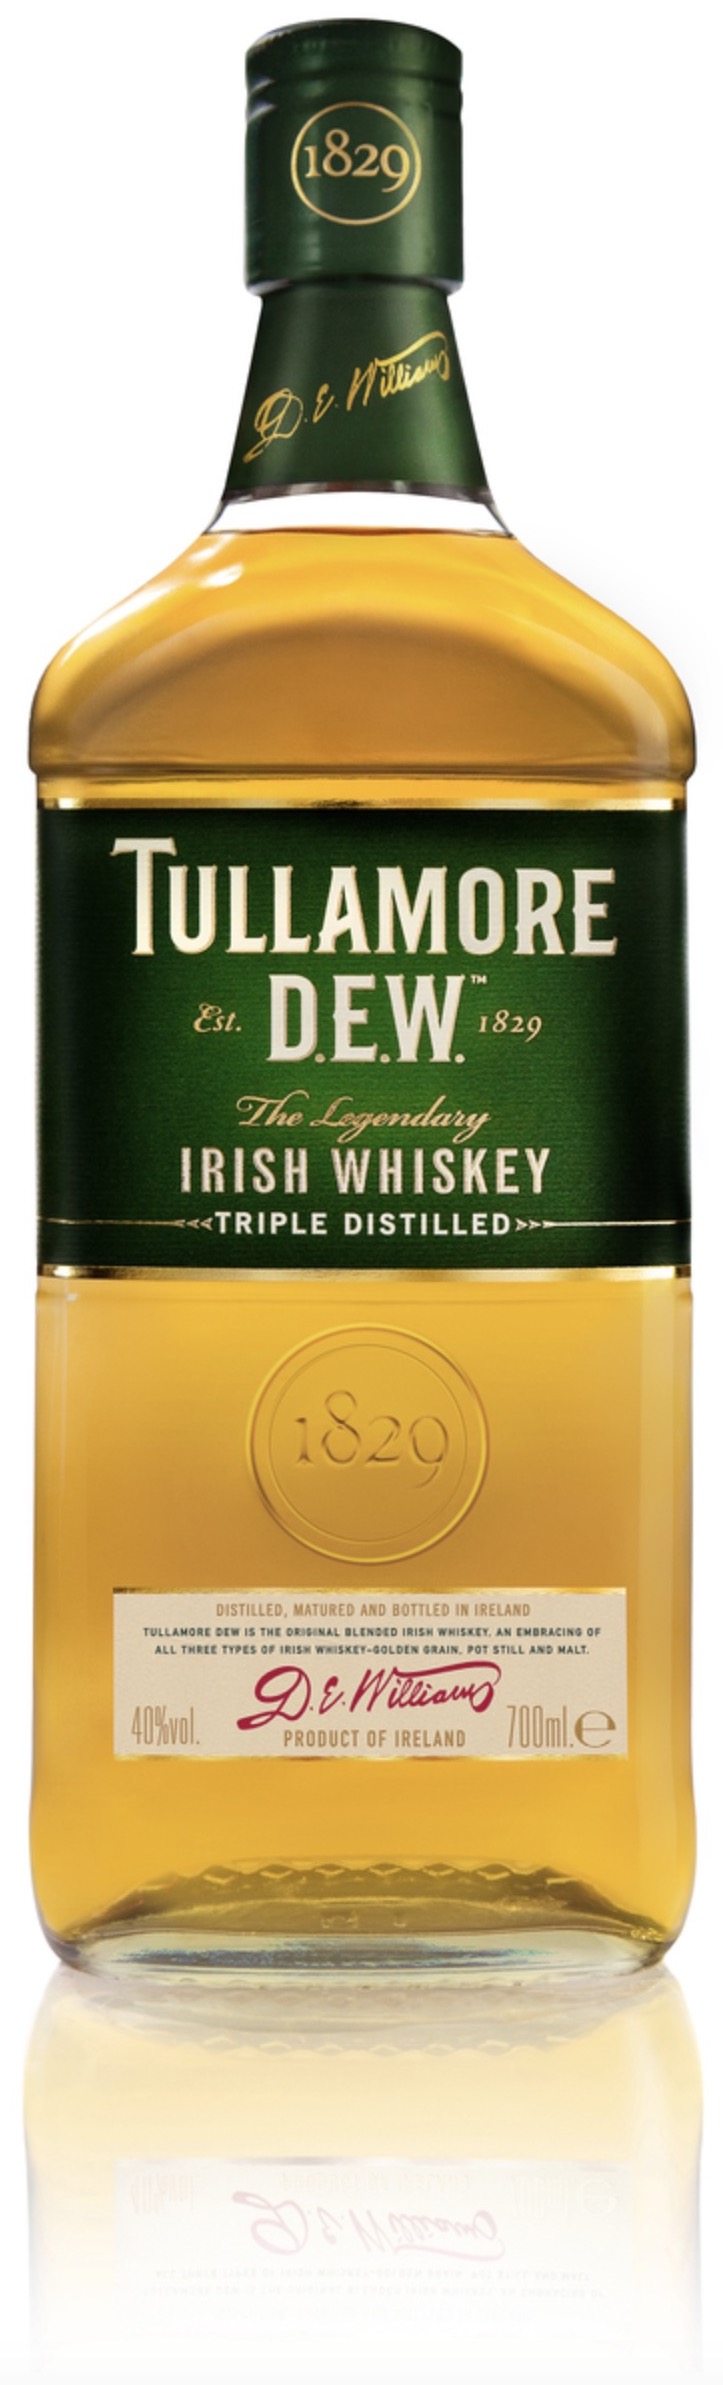 Tullamore Dew Irish Whiskey 40% 0,7L